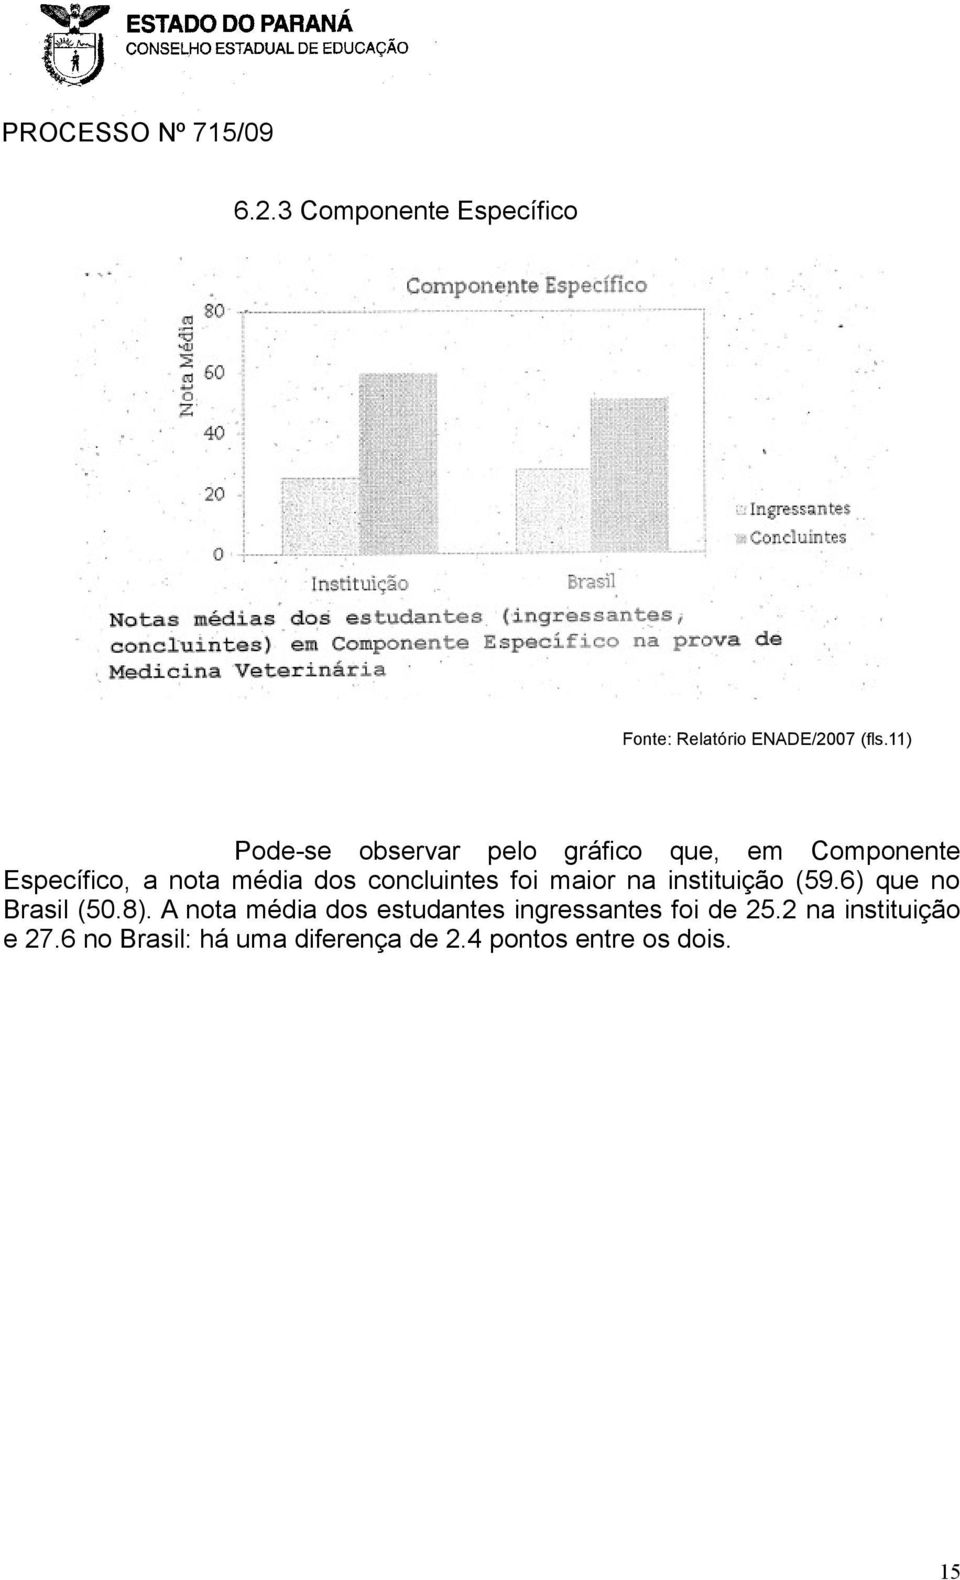 concluintes foi maior na instituição (59.6) que no Brasil (50.8).